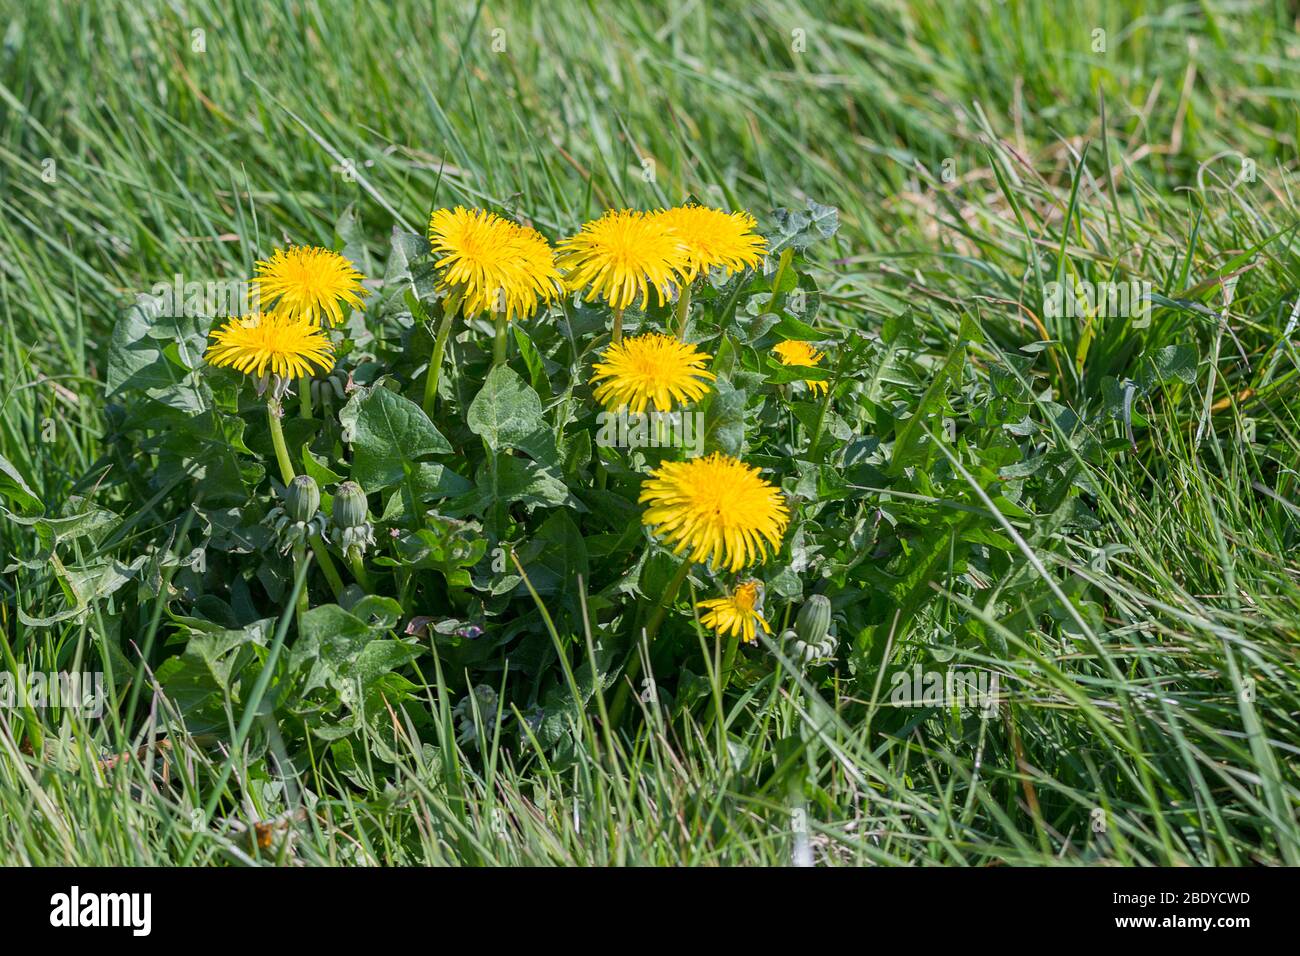 Löwenzahn Taraxacum officinale gelbe Blütenköpfe enthalten 200 Röschen Blätter sind löwenzahn geformt mehrere lange hohle Blütenstiele wachsen von der Basis Stockfoto